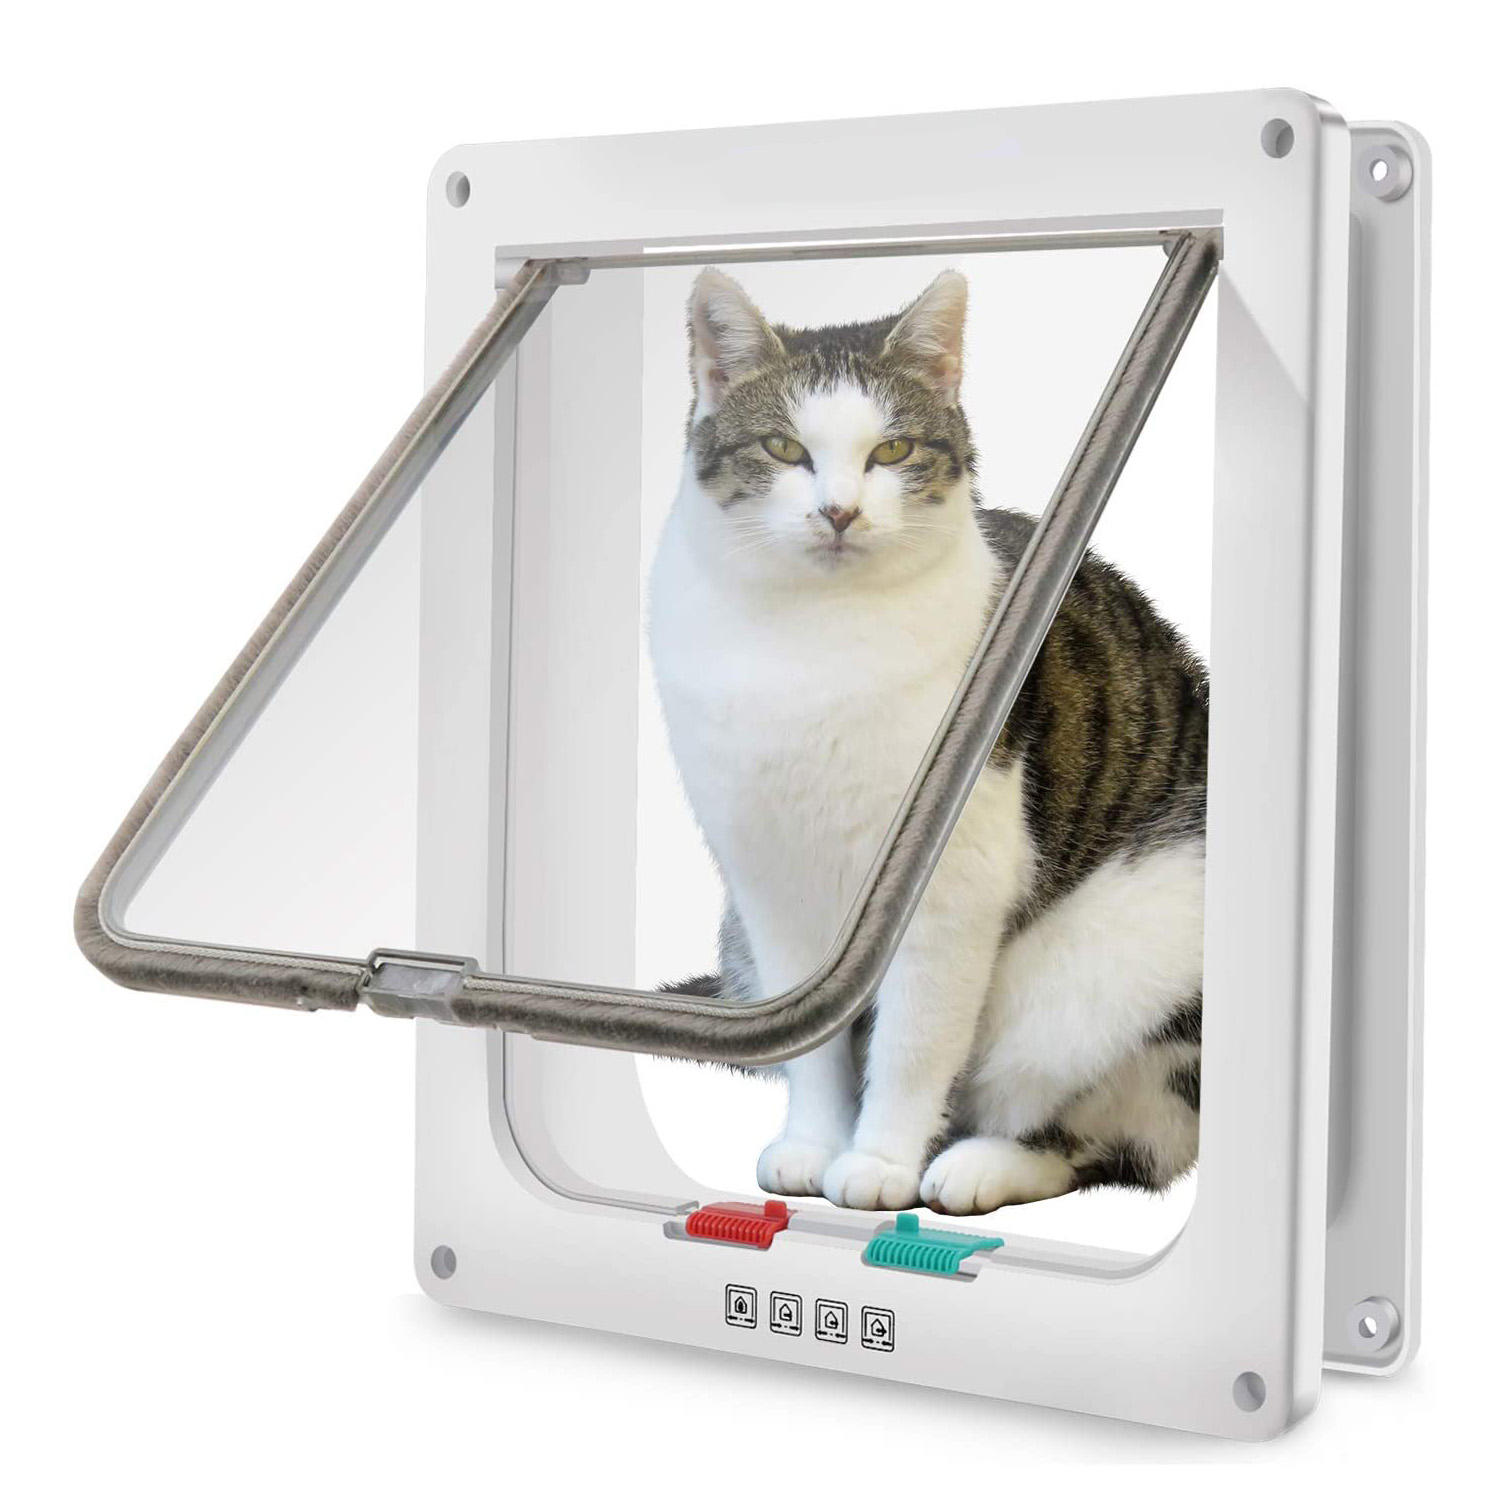 Pet Flap Brown Automatic Interior PVC Dog Cat Doors Cat Door 4 Way Locking Magnetic For Home Puppy & Cat Pet Door